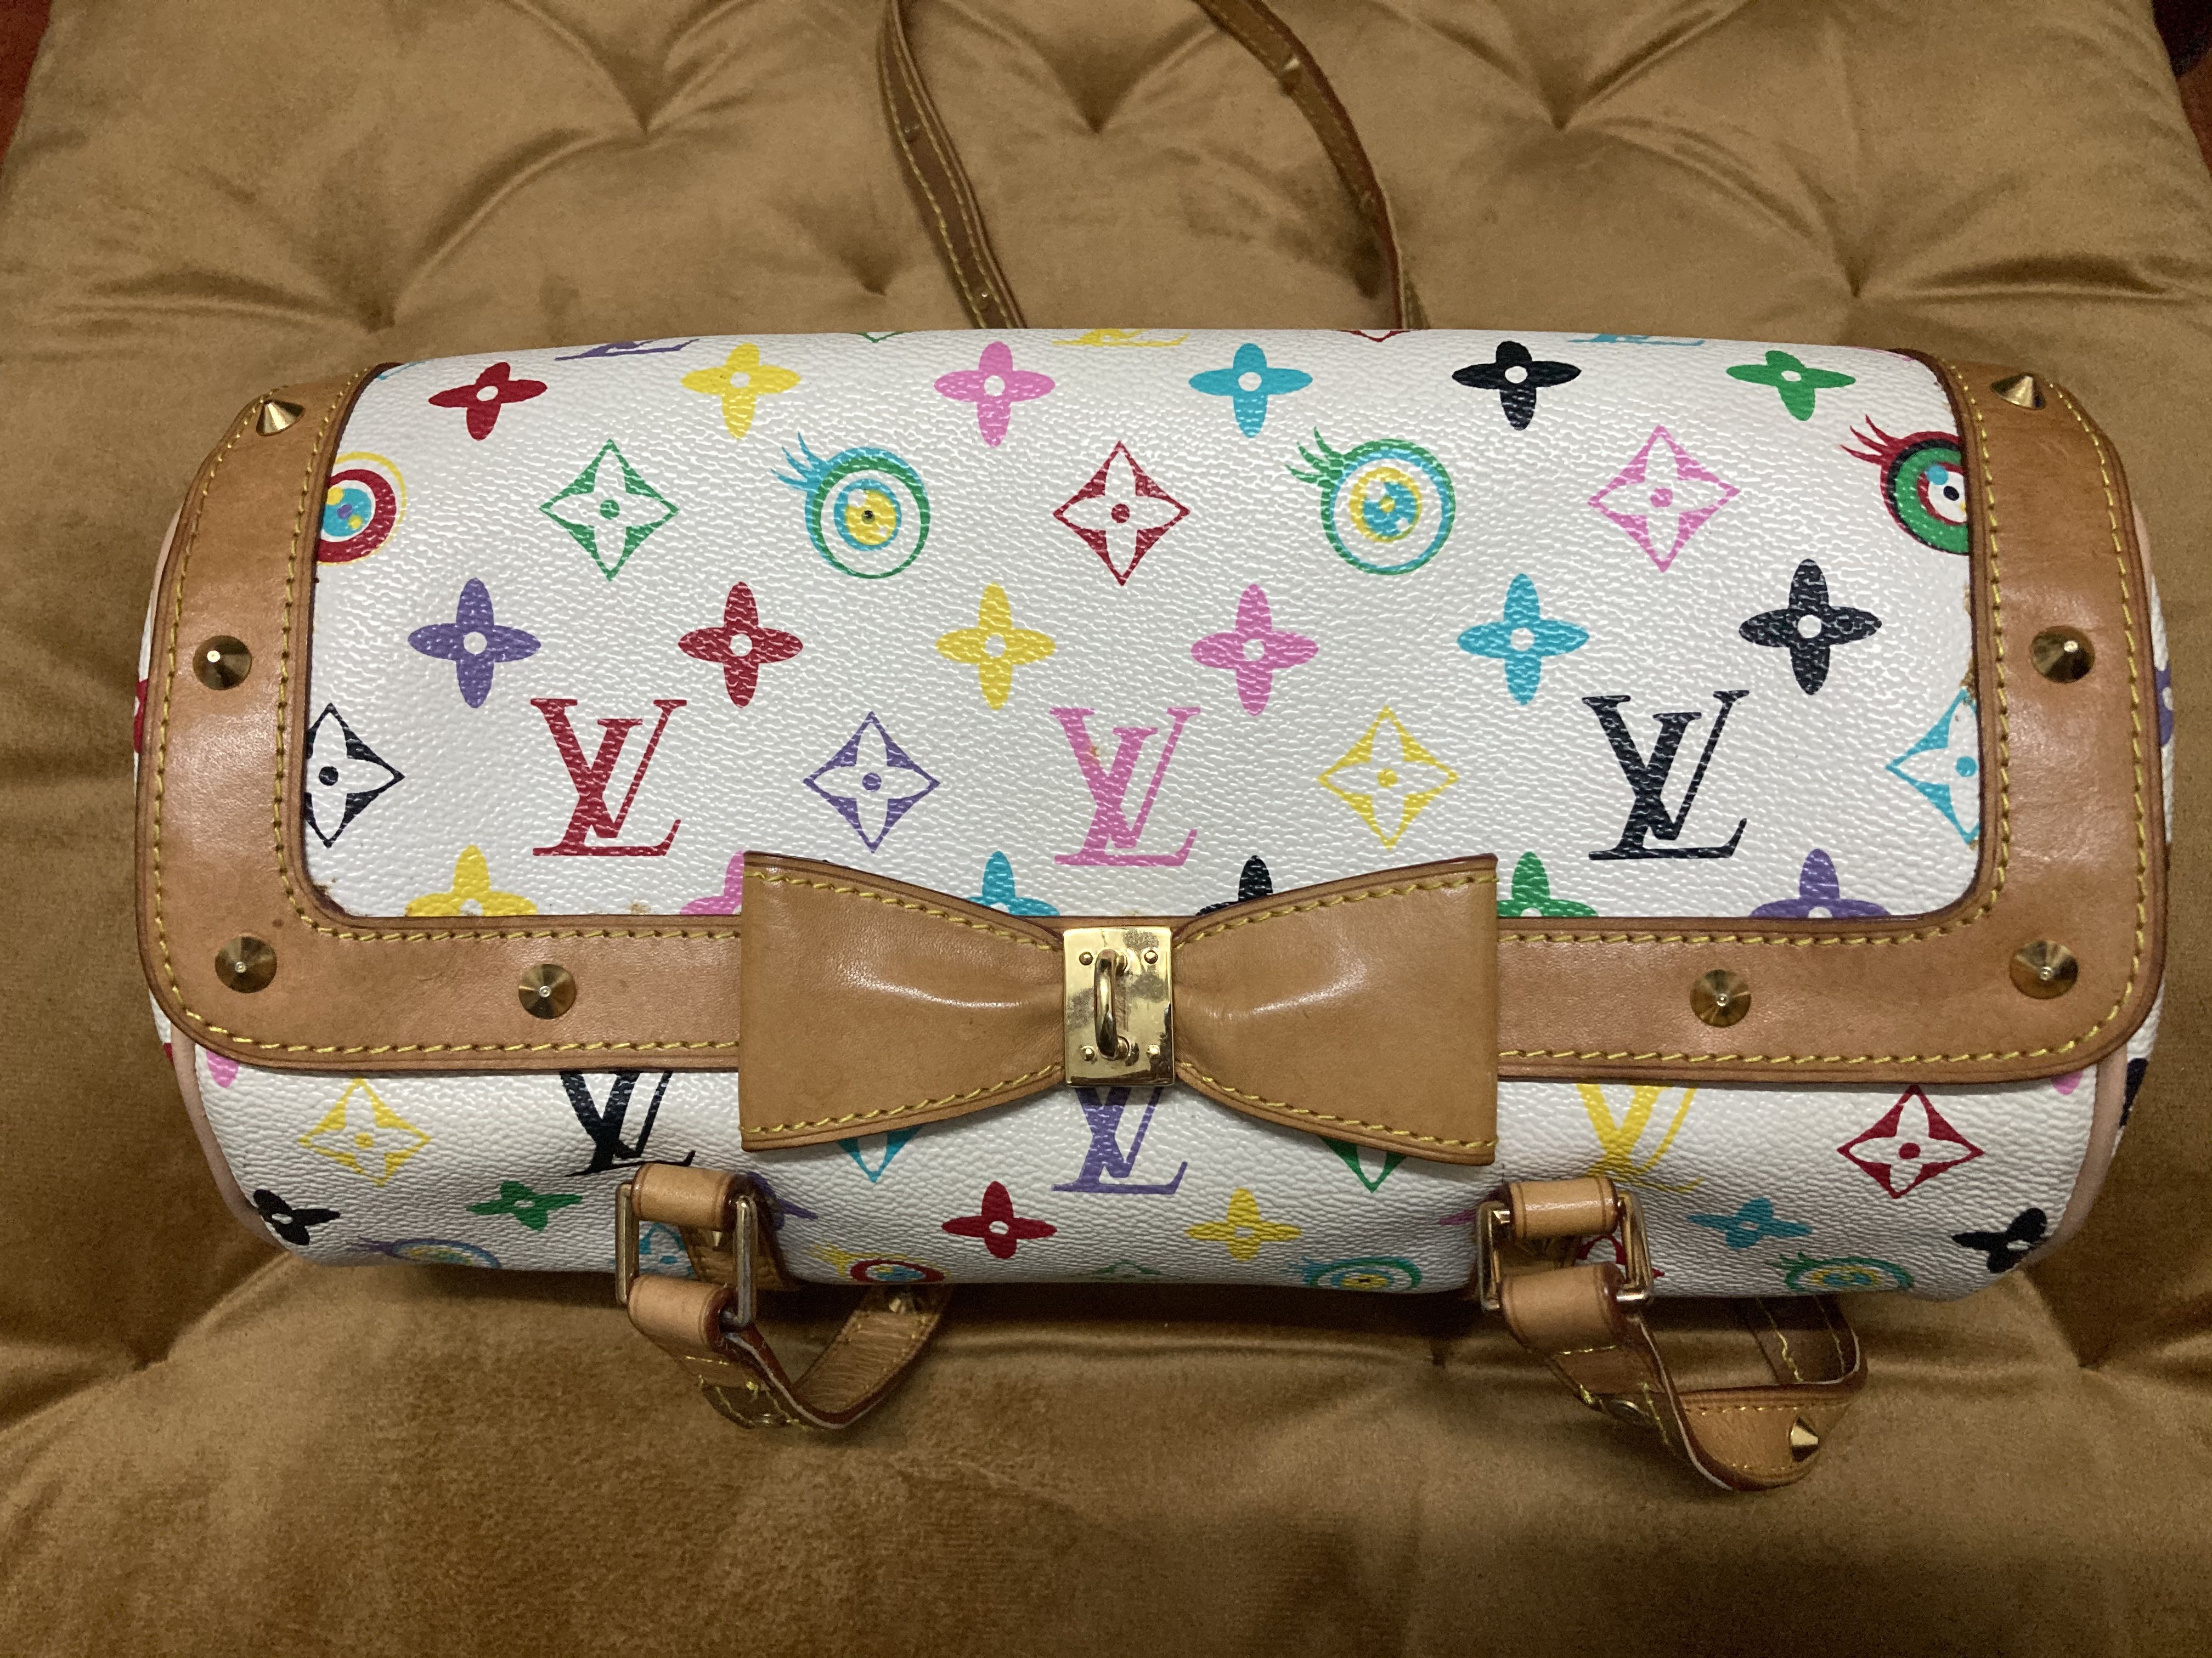 Louis+Vuitton+Papillon+Top+Handle+Bag+Multicolor+Leather for sale